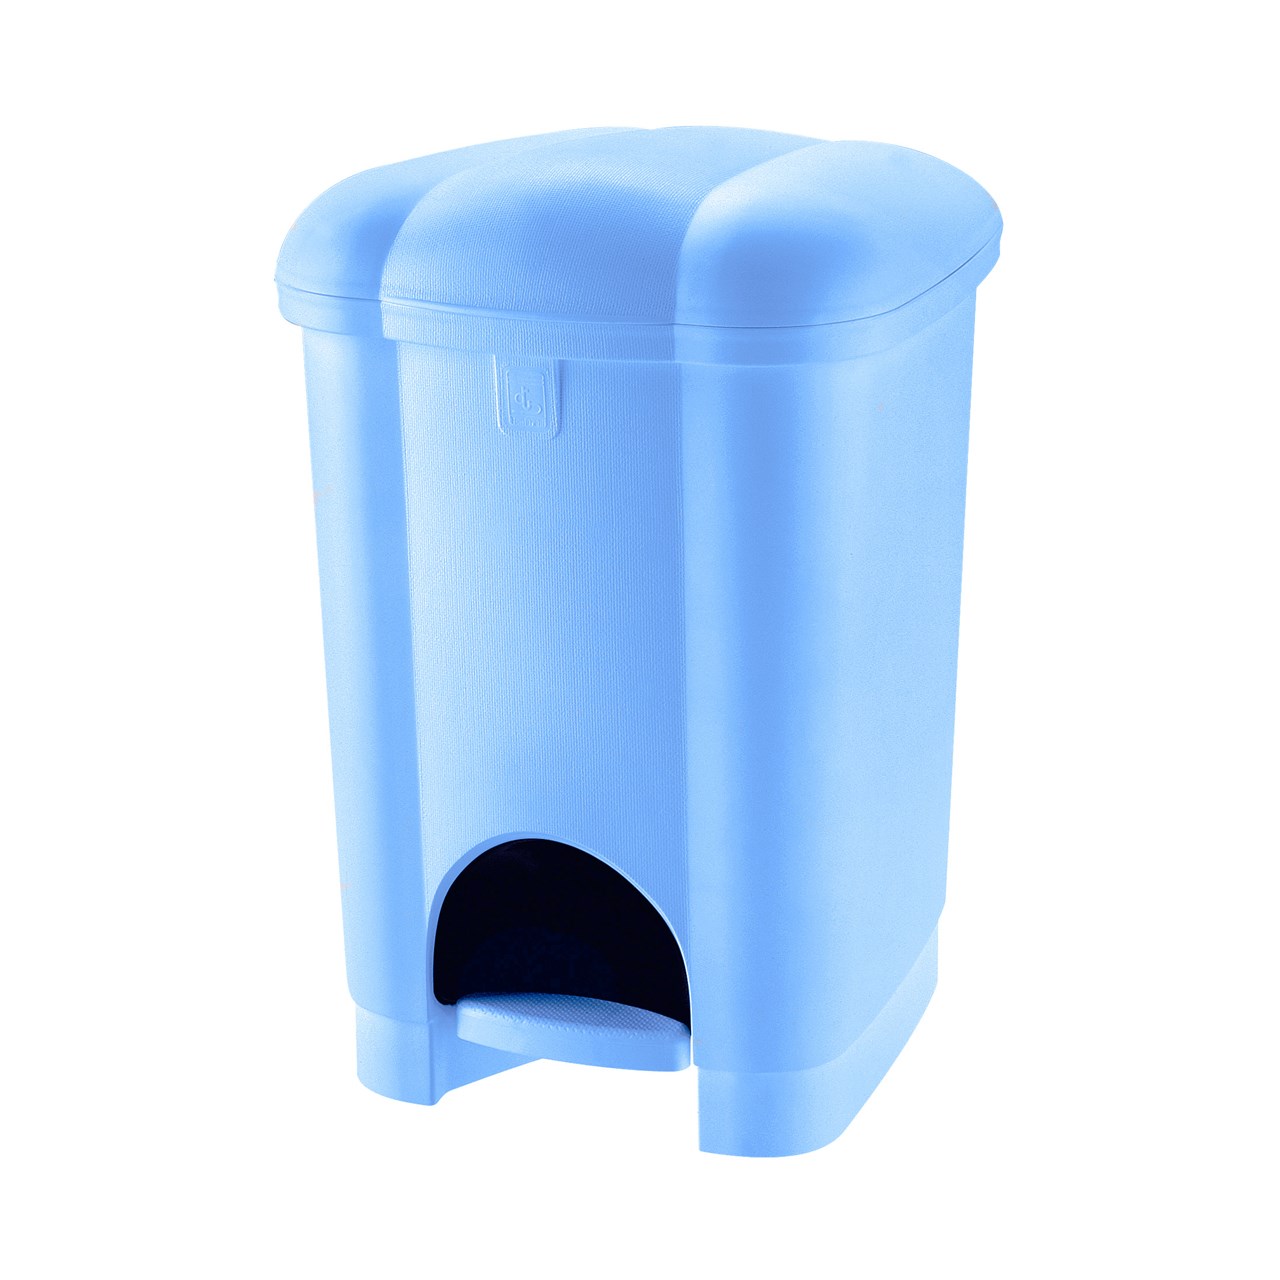 سطل زباله پدالی تنتارلی مدل Carolina - گنجایش 6 لیتر